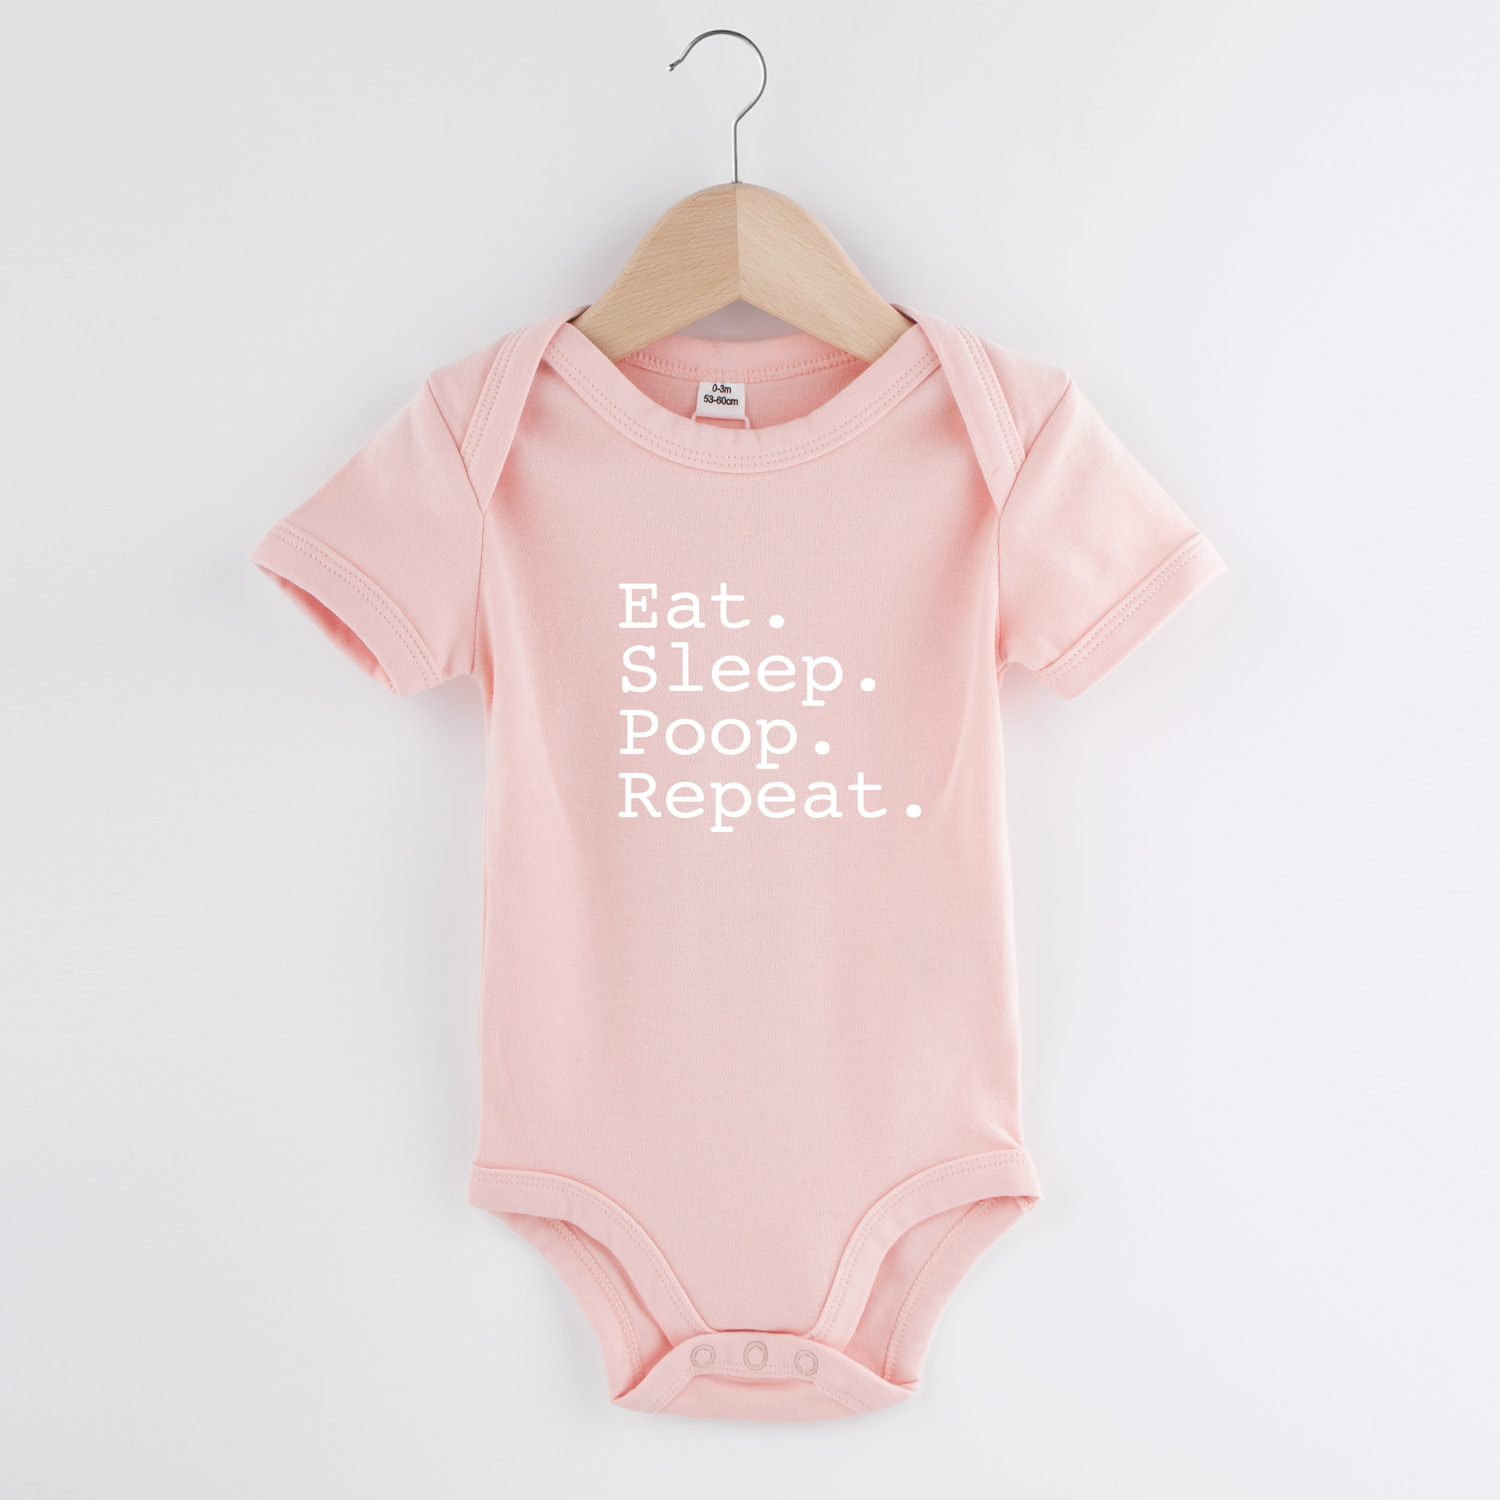 Eat sleep poop repeat | Baby romper | my fabulous life.